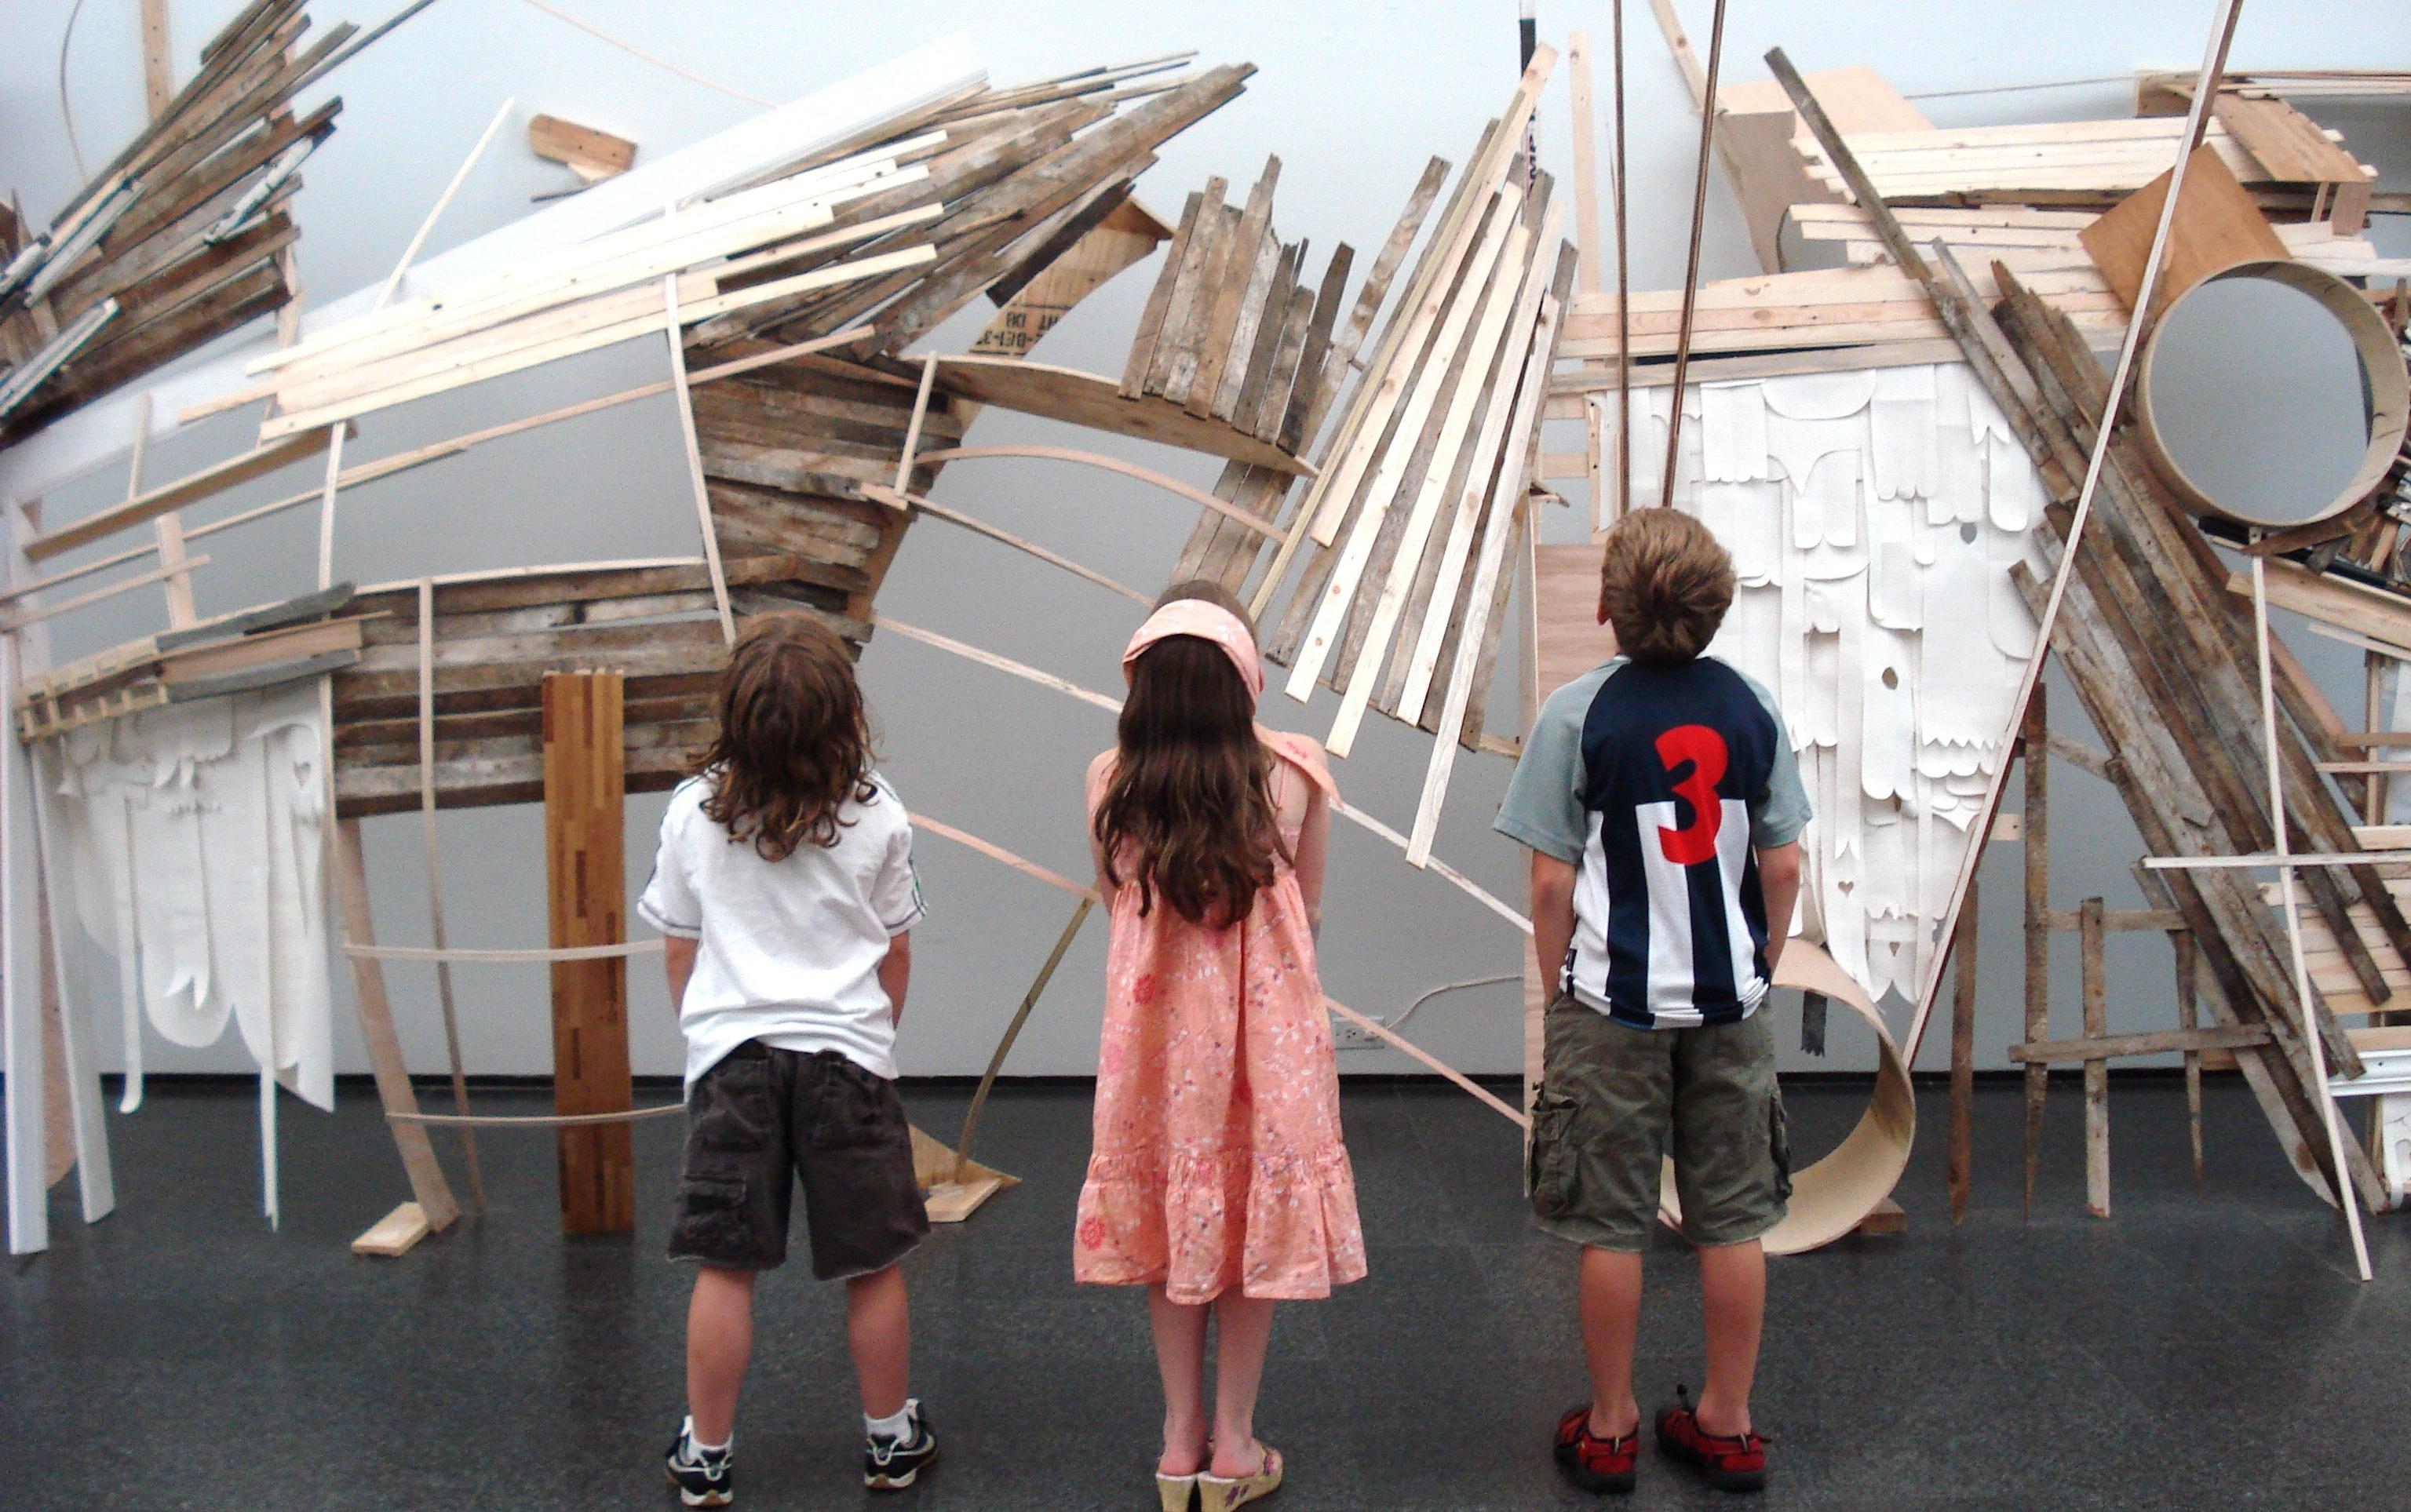 three children view an art installation